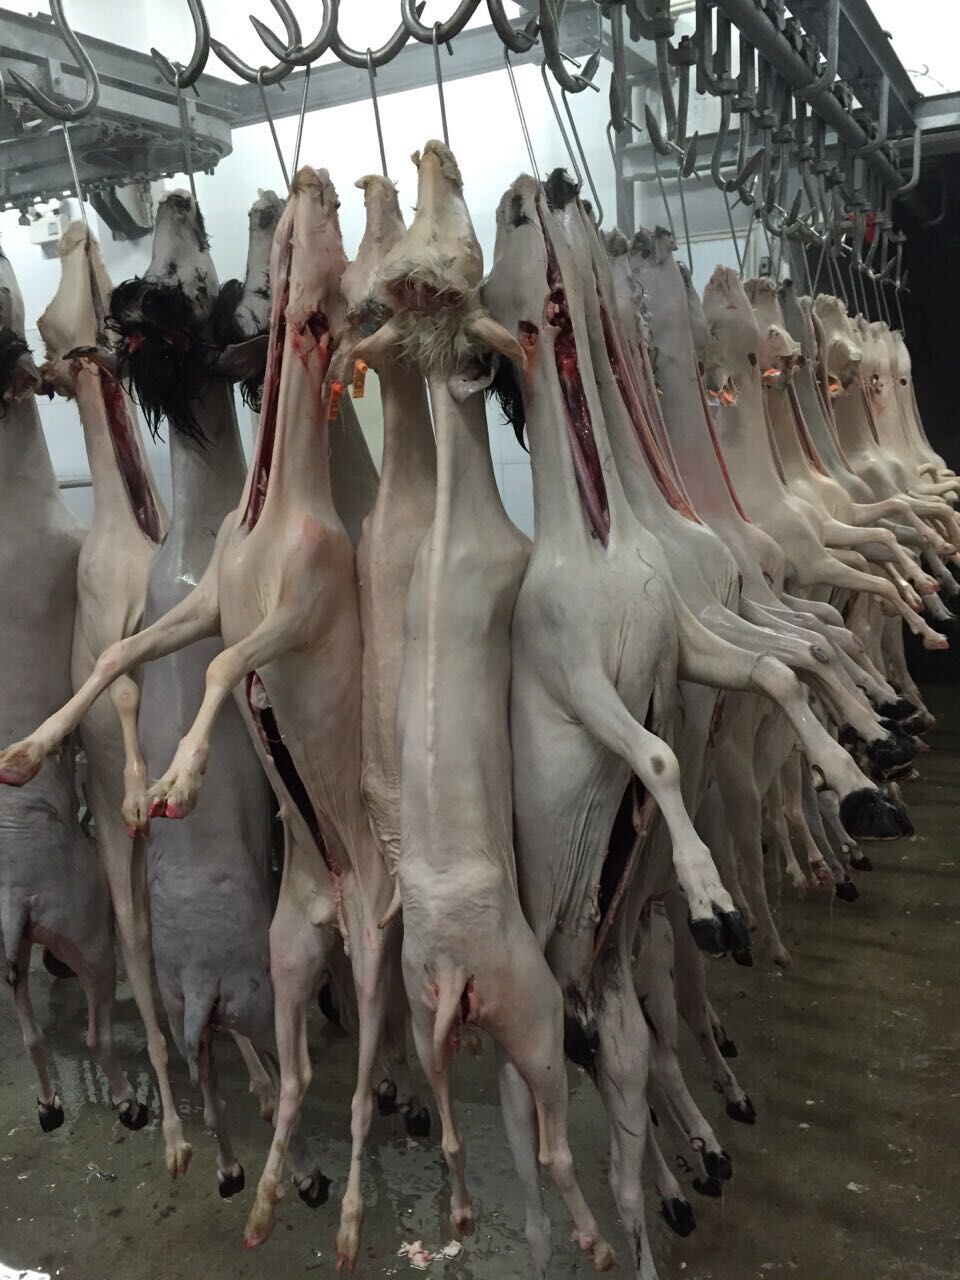 【上海】哪个农产品市场有鲜羊肉卖?羊肉批发